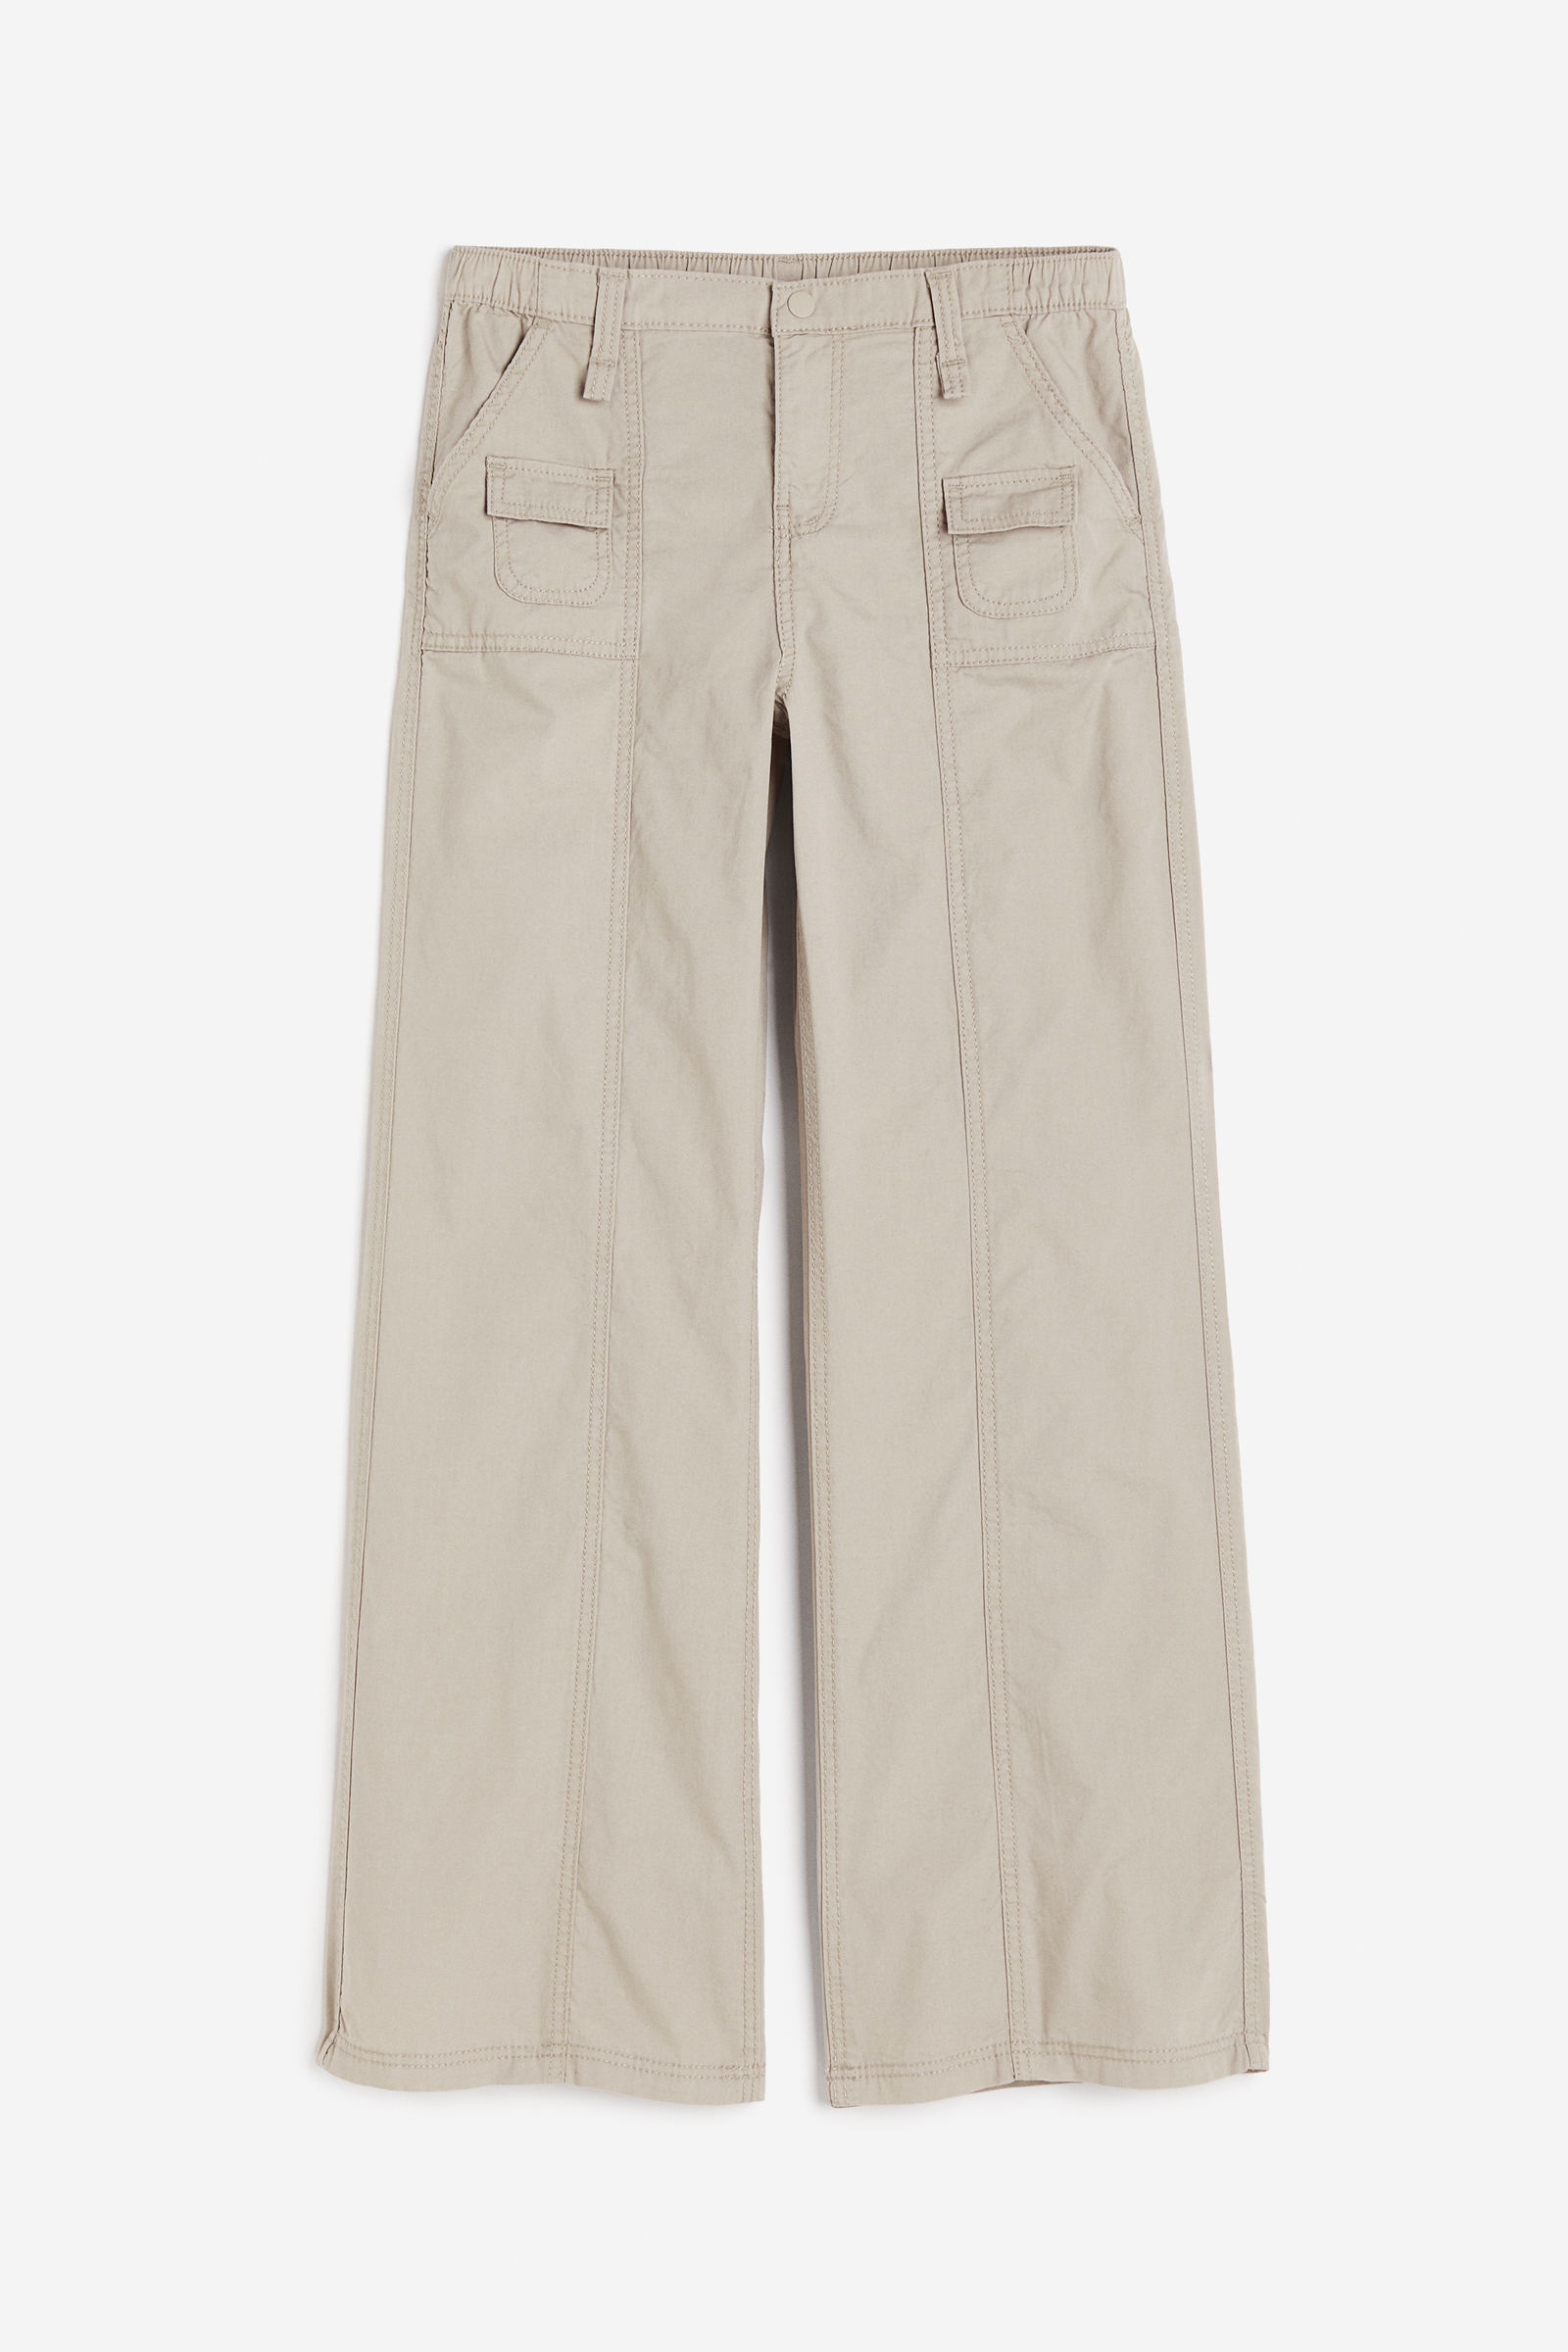 Pantalones para mujer paracaídas, clásicos y anchos - H&M CO